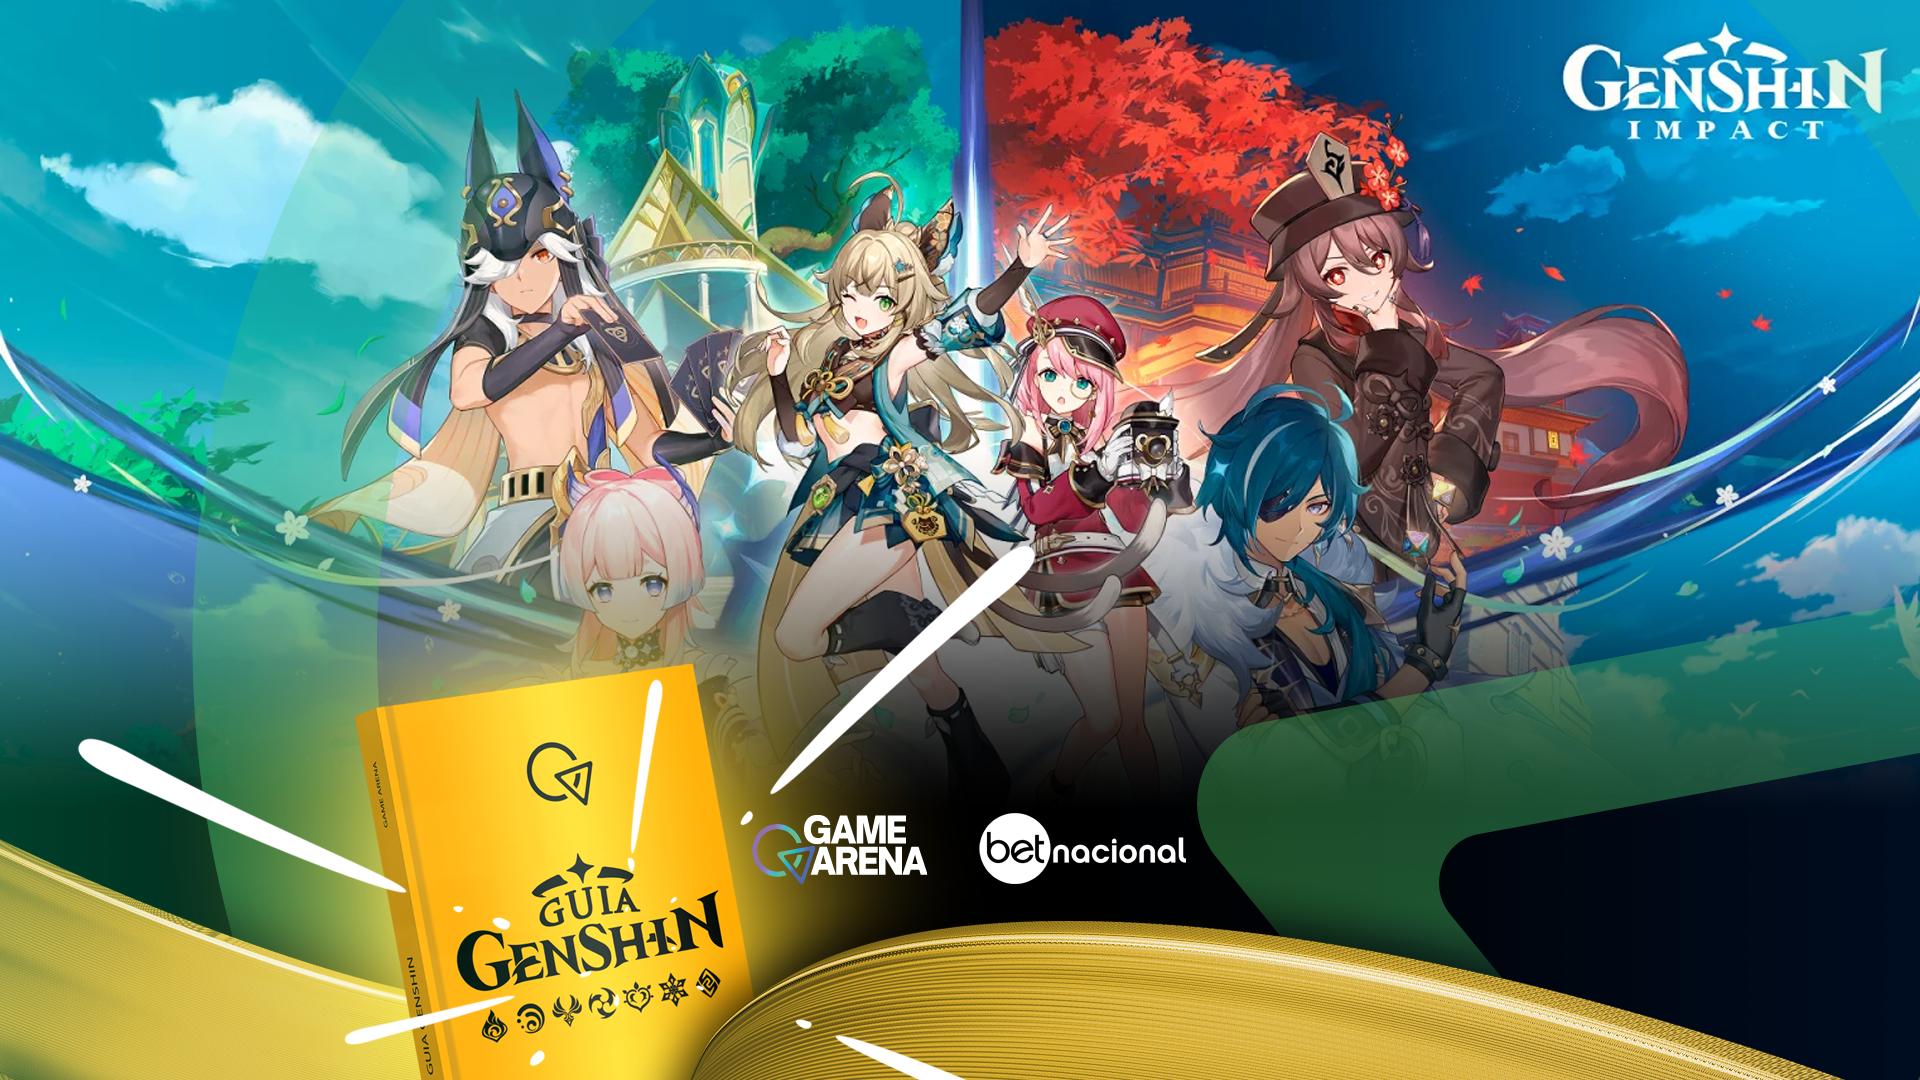 Os 10 personagens de Genshin Impact mais populares! - Olá Nerd - Games